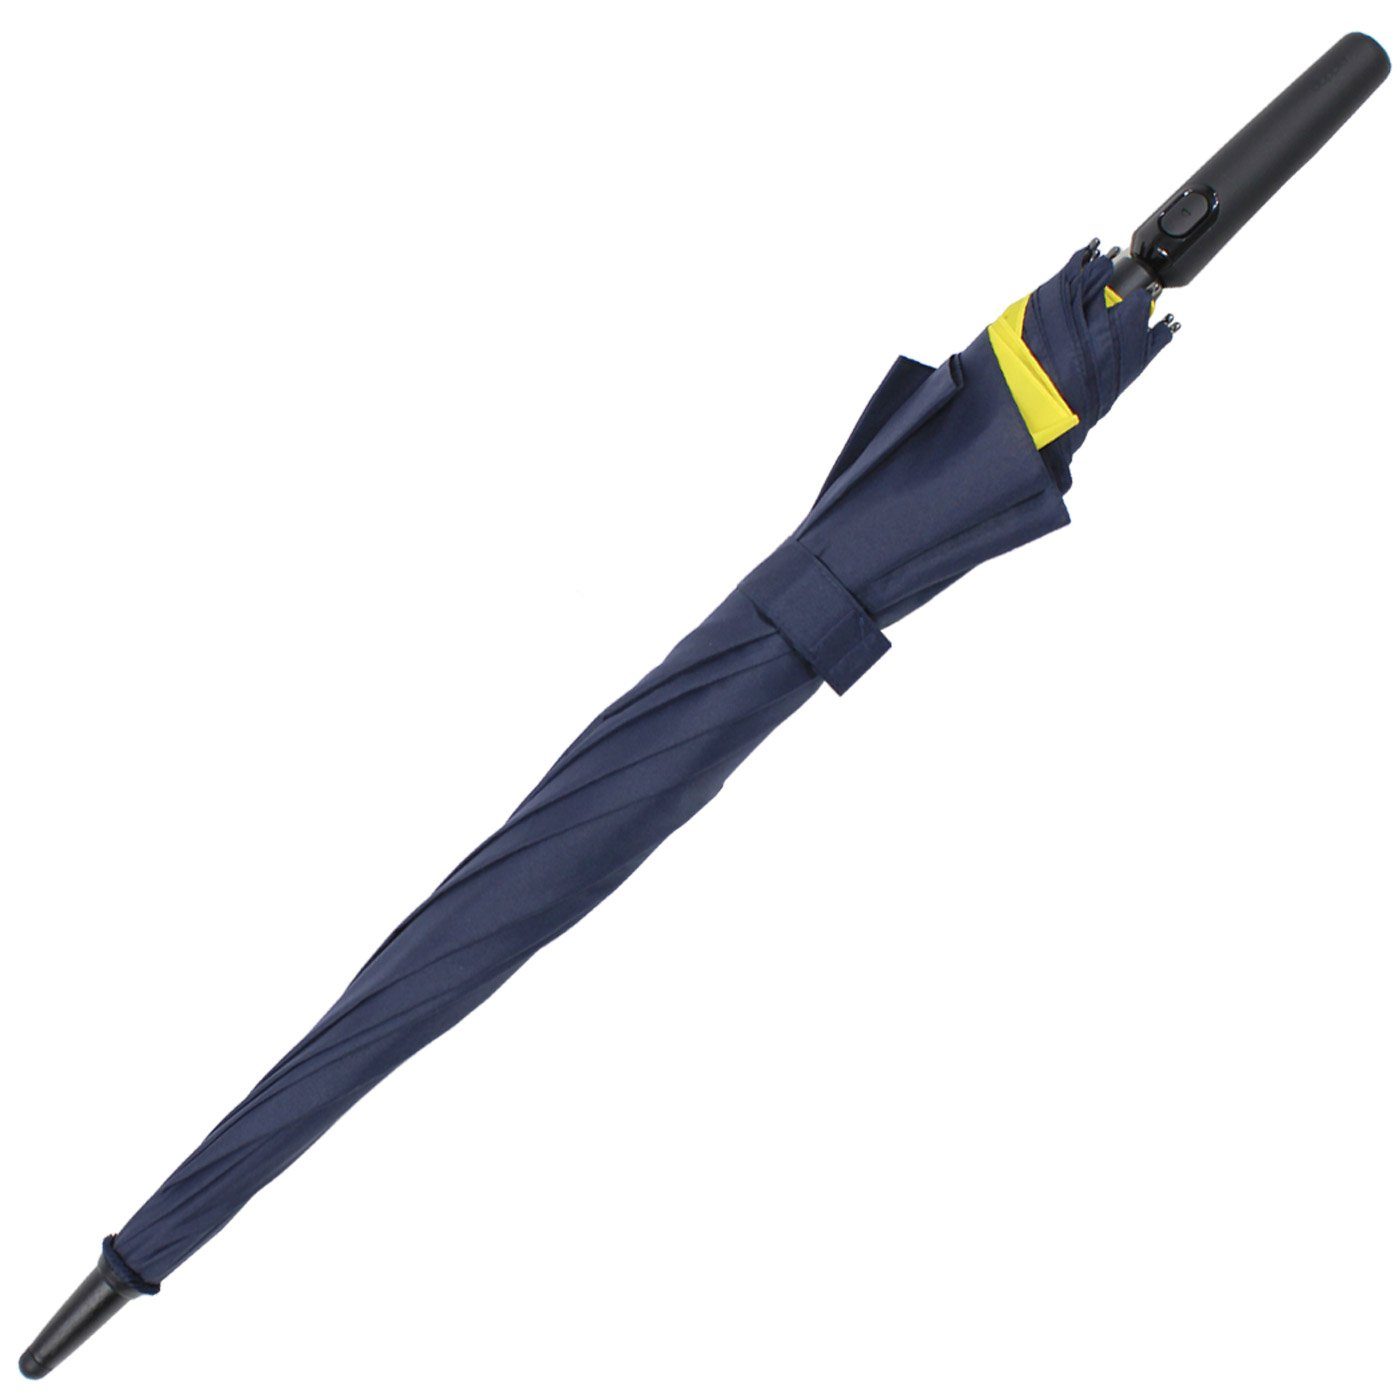 sich Schutz vergrößert mit doppler® beim Fiberglas vor Regen für Move to XL, Langregenschirm Öffnen mehr navyblau-gelb - Auf-Automatik